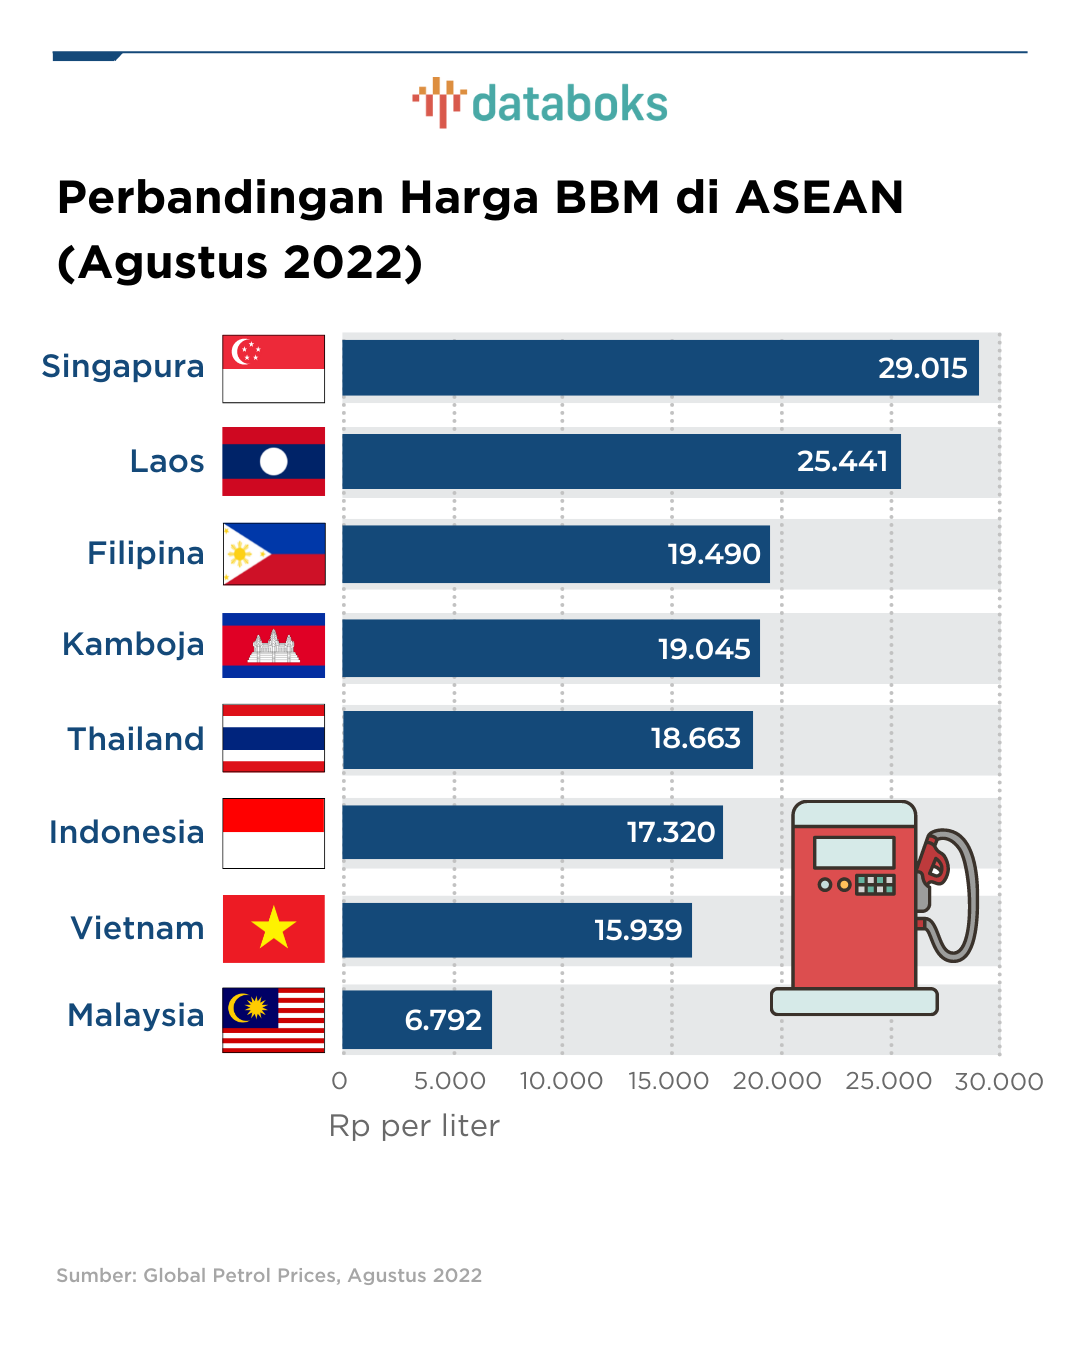 Perbandingan Harga BBM Indonesia dengan Negara ASEAN